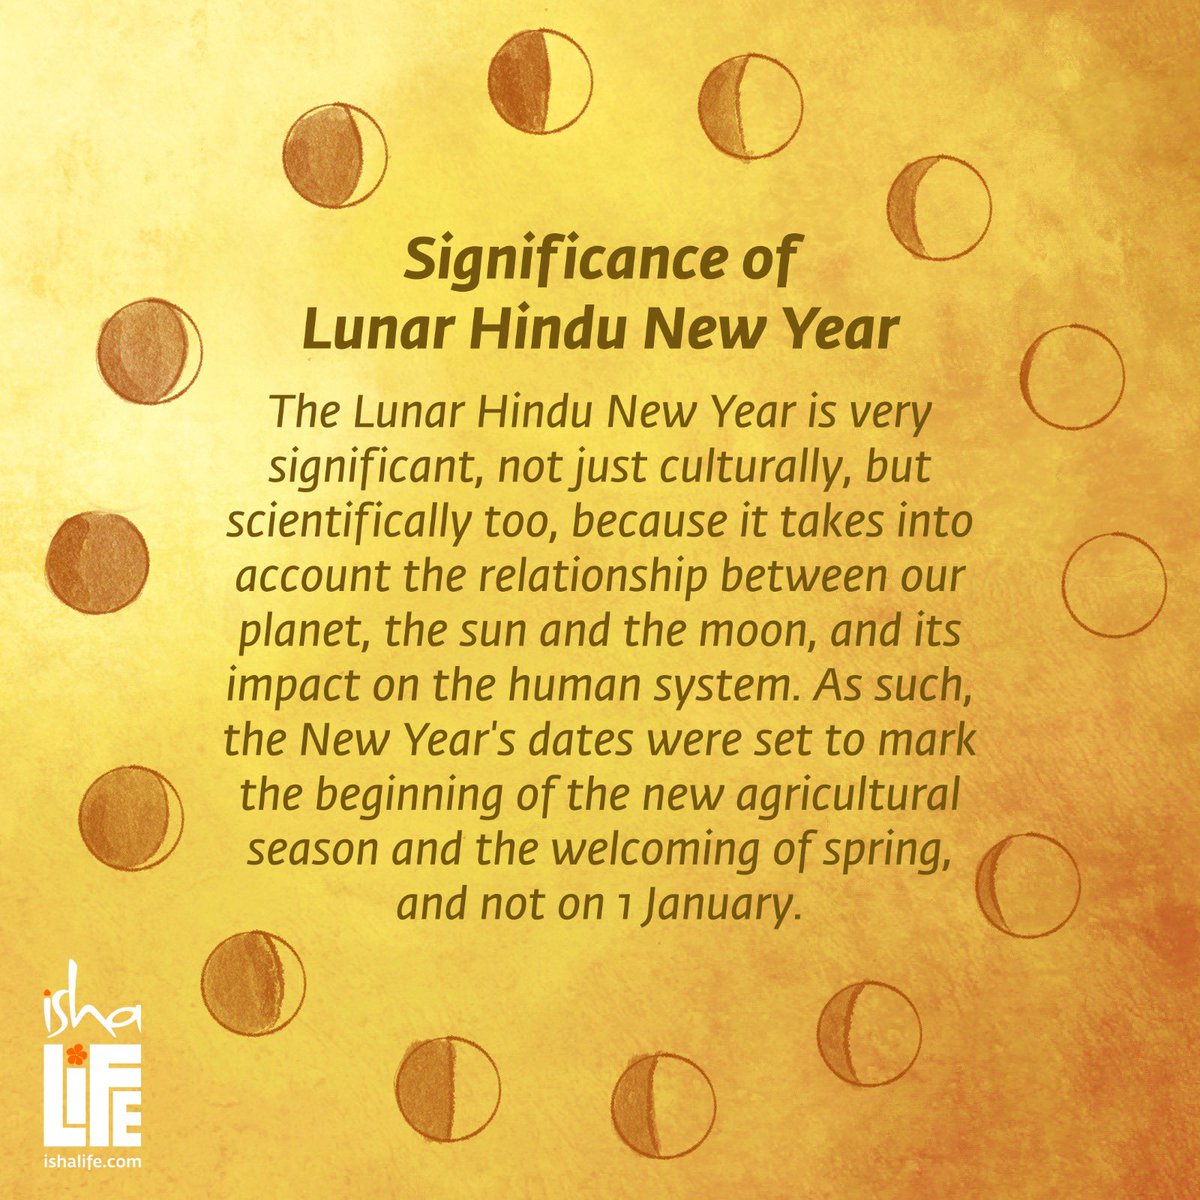 Wishing you all a Happy Lunar New Year!

#ugadi #festivities #isha #nevreh #gudipadwa #hindunewyear #lunarnewyear #lunarcycle #festivefood #ishayogacenter #ishafoundation #ancientwisdom #indianfestivals #indianfoodrecipes #ishalife #forconsciousliving